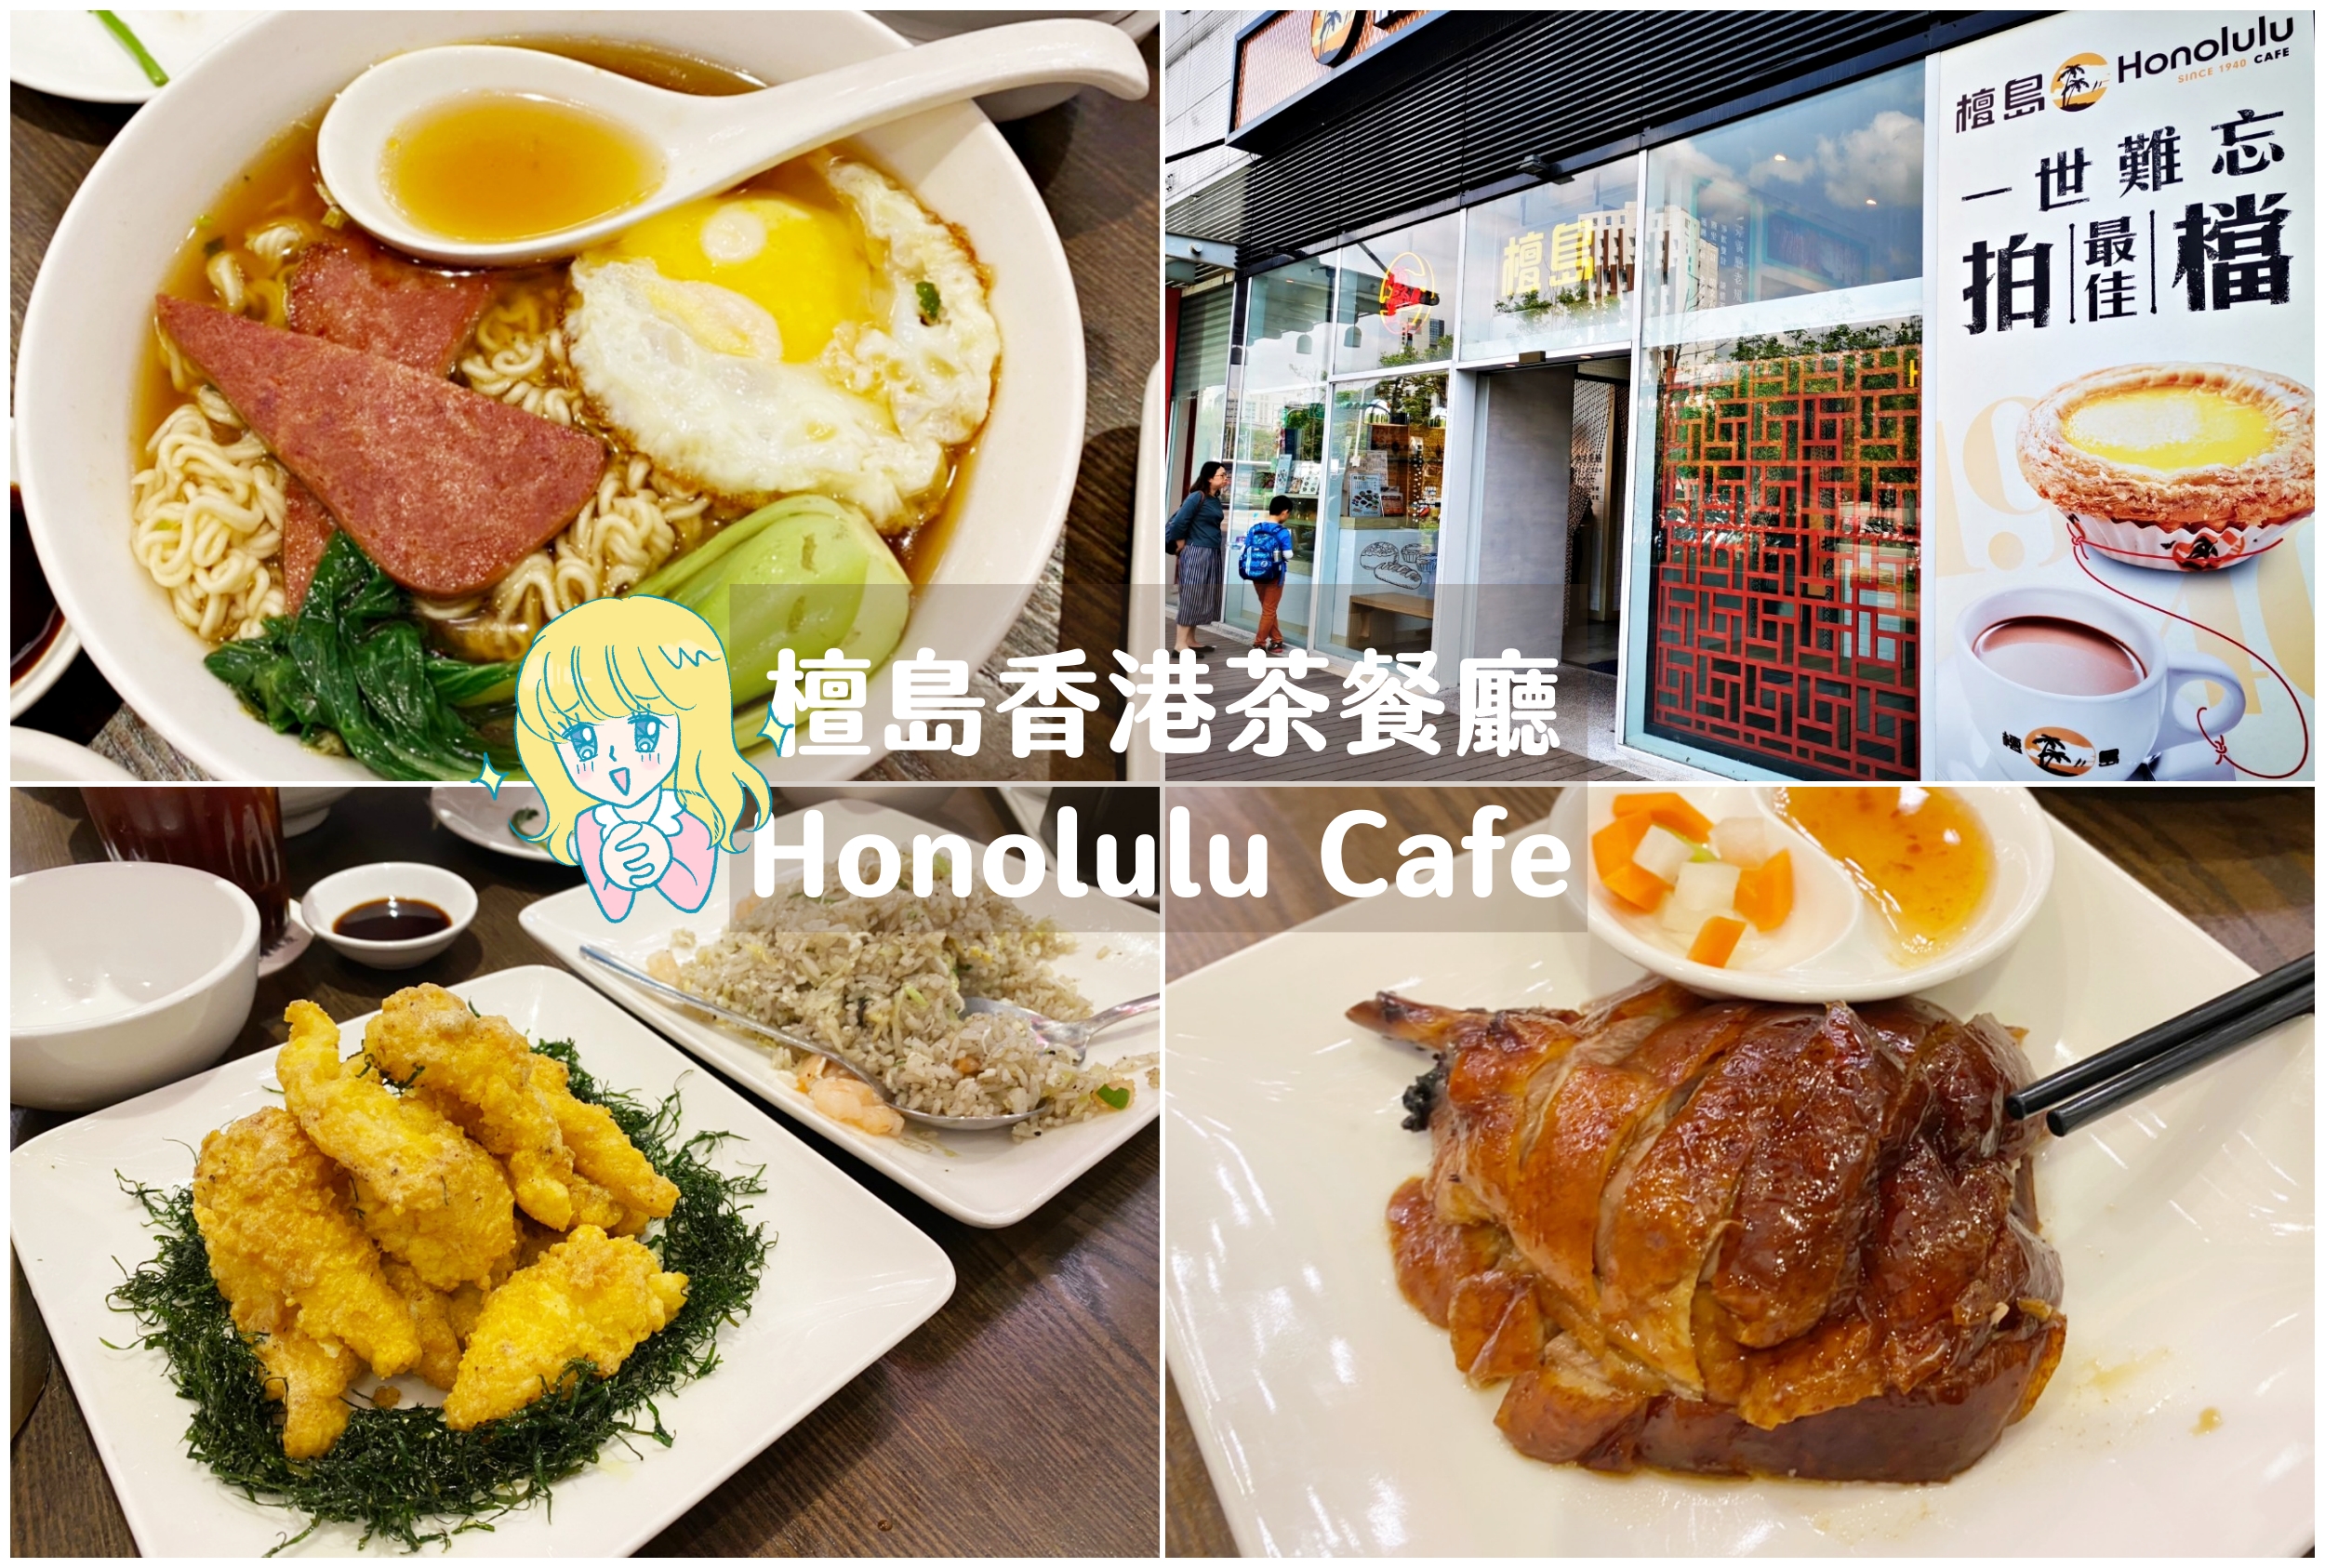 大直-檀島香港茶餐廳 Honolulu Cafe